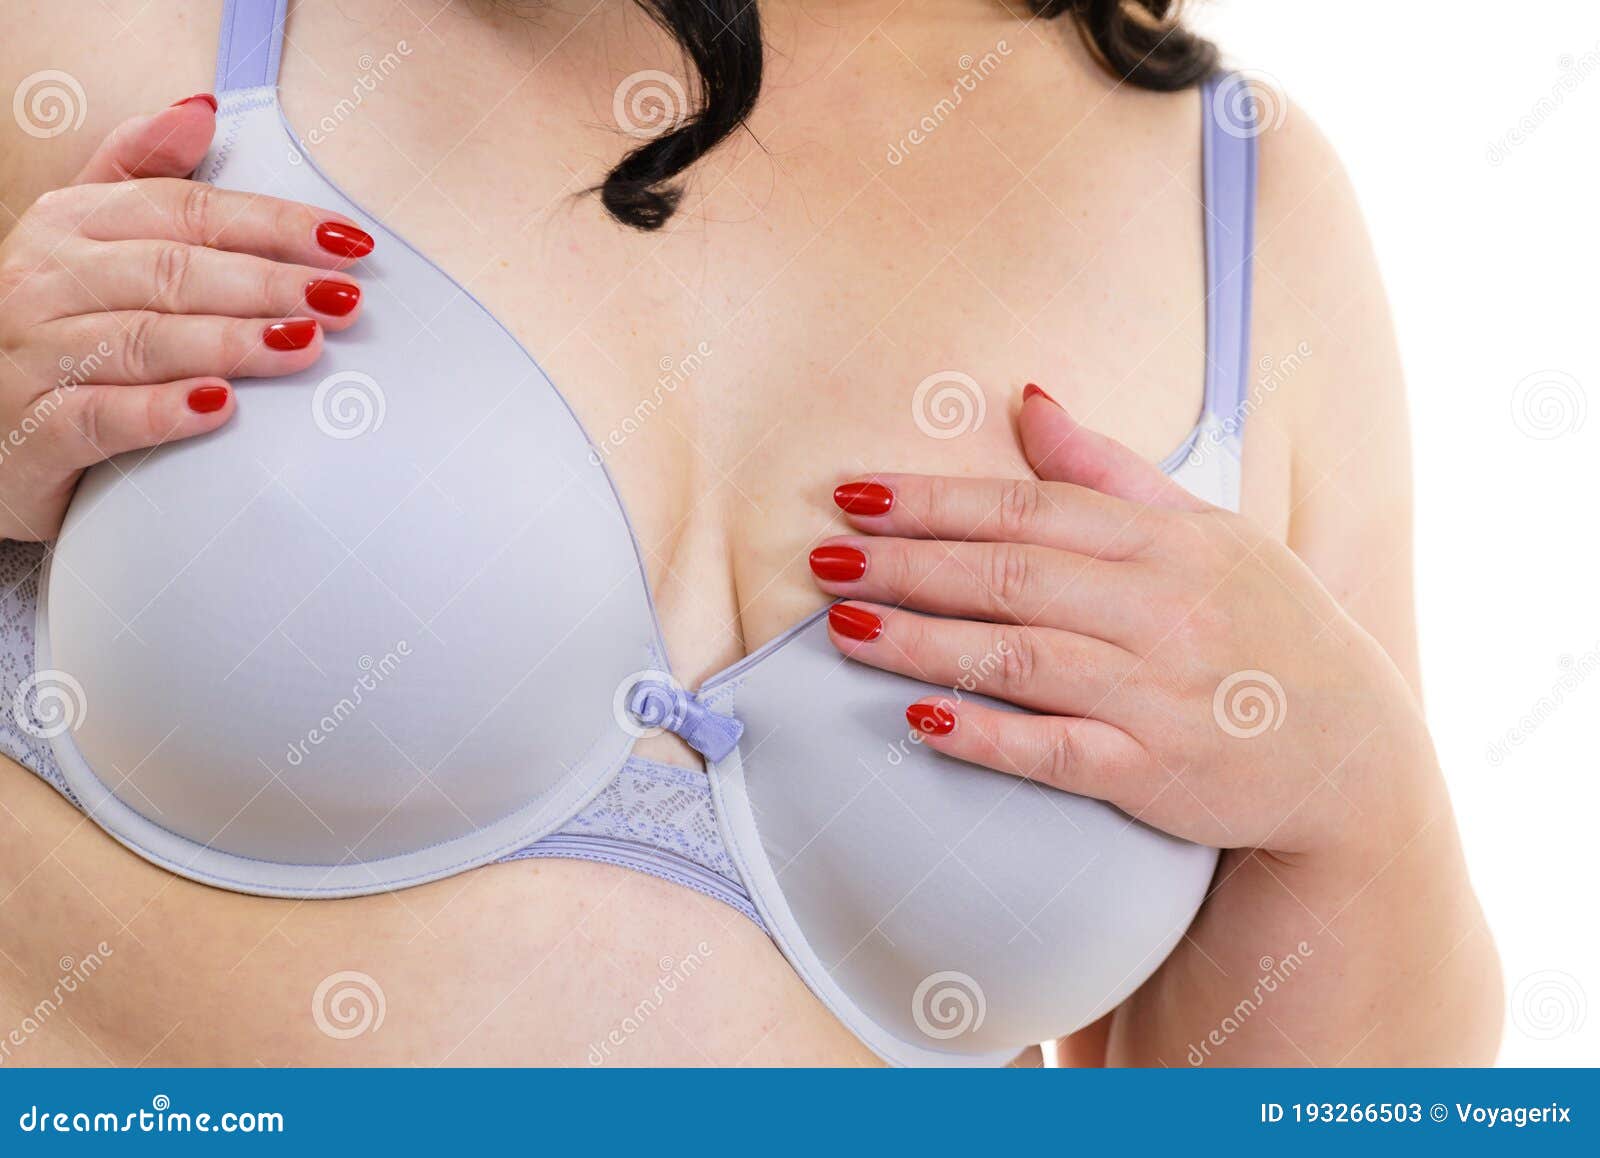 alessandra de mesa recommends big white breast pic